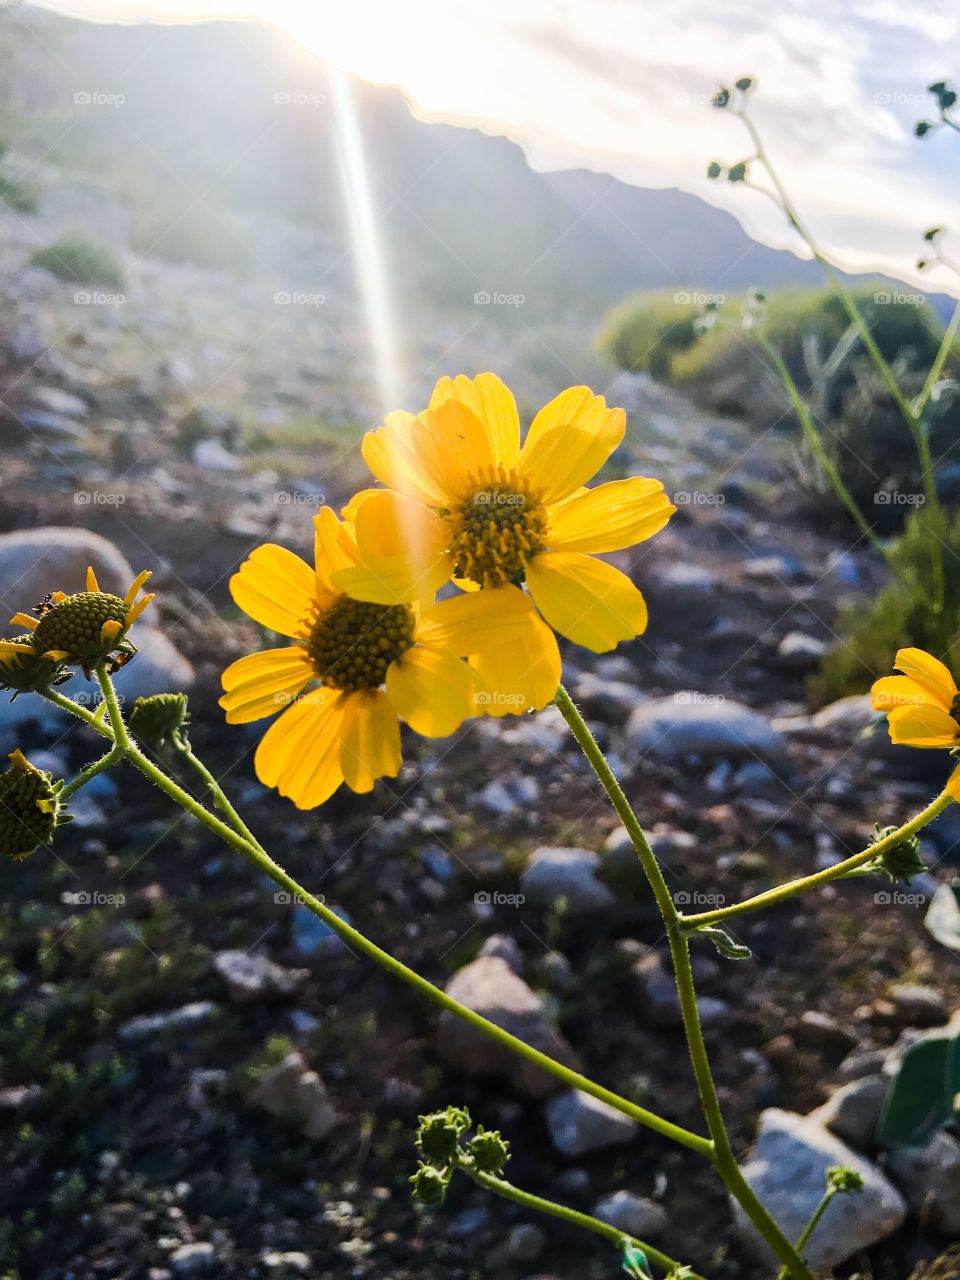 Desert wildflower